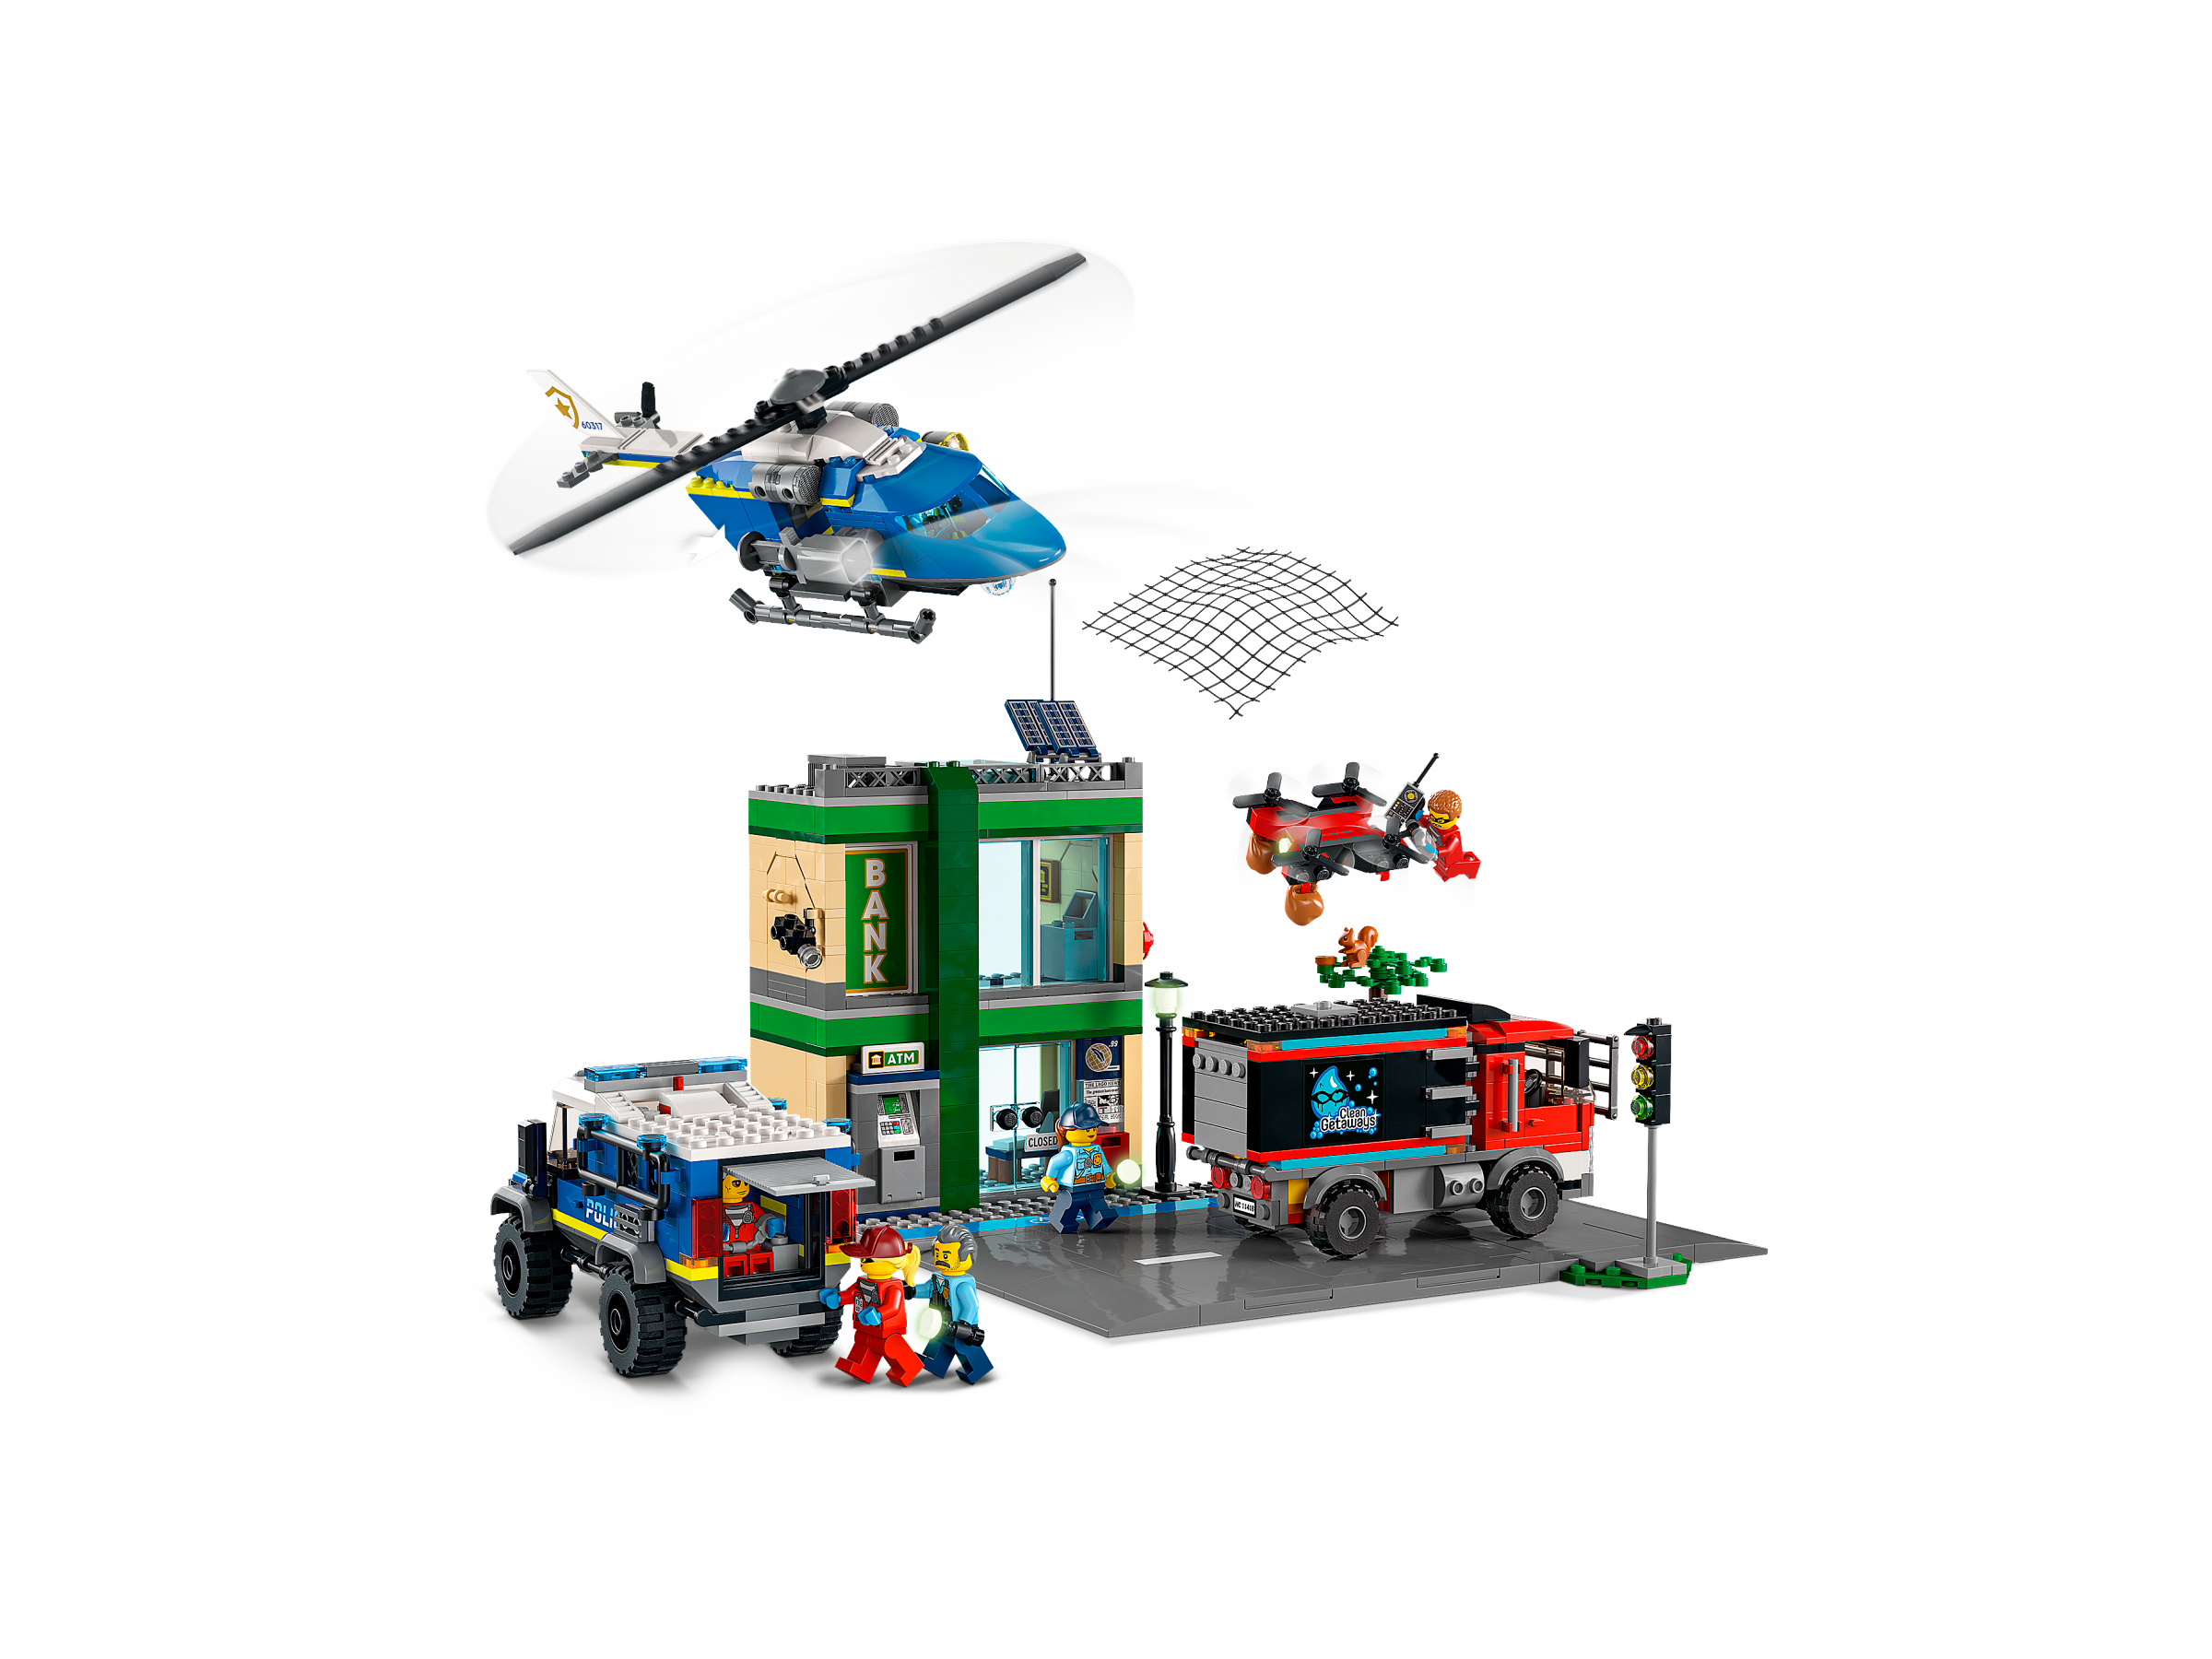 LEGO 60317 City Police Inseguimento della Polizia alla Banca, con  Elicottero, Drone e 2 Camion, Giocattolo Bambini dai 7 Anni in su :  : Giochi e giocattoli